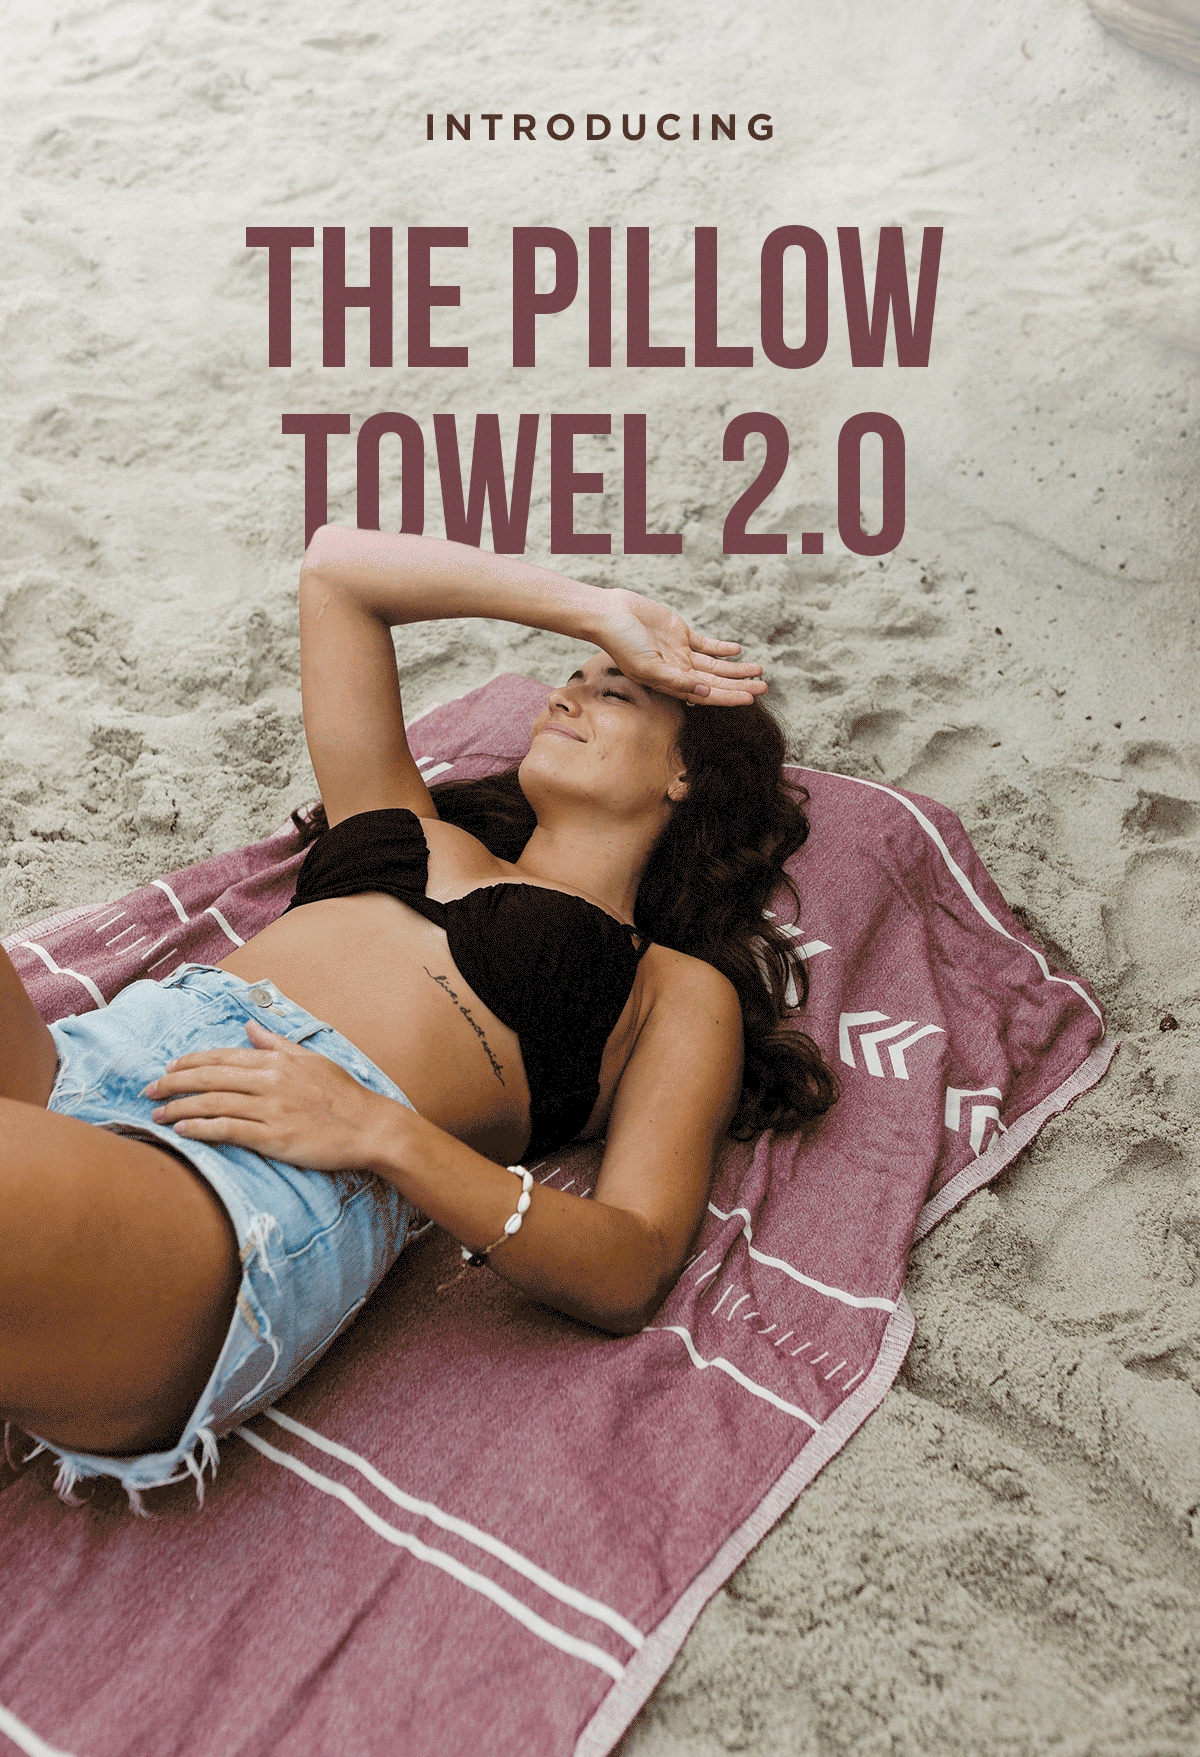 Introducing the Pillow Towel 2.0